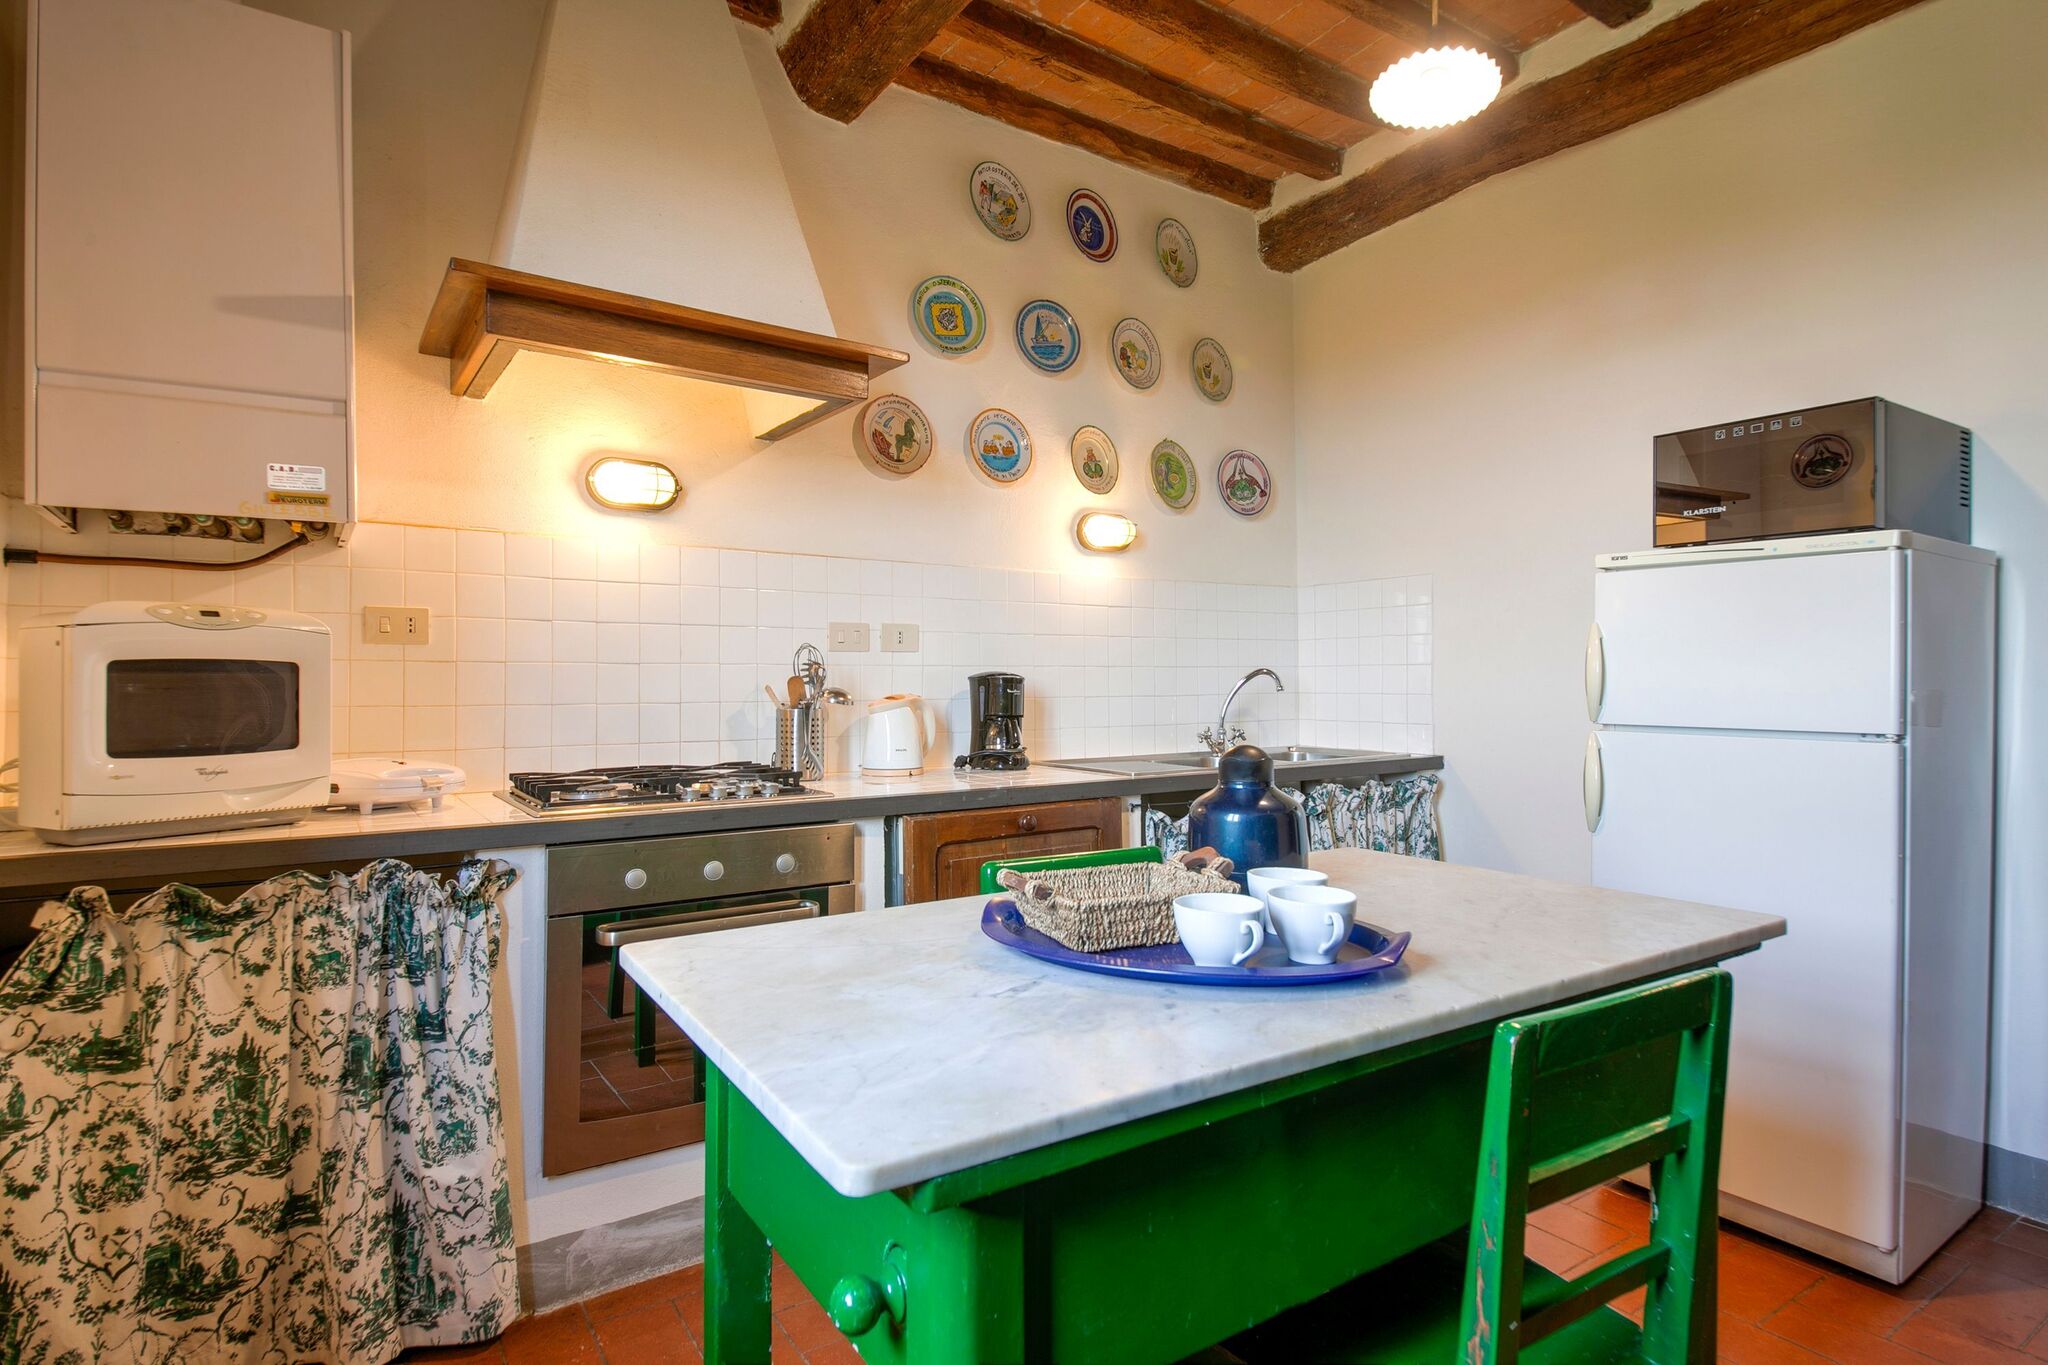 Een klein complex van vijf mooie appartementen in de groene Toscaanse heuvels